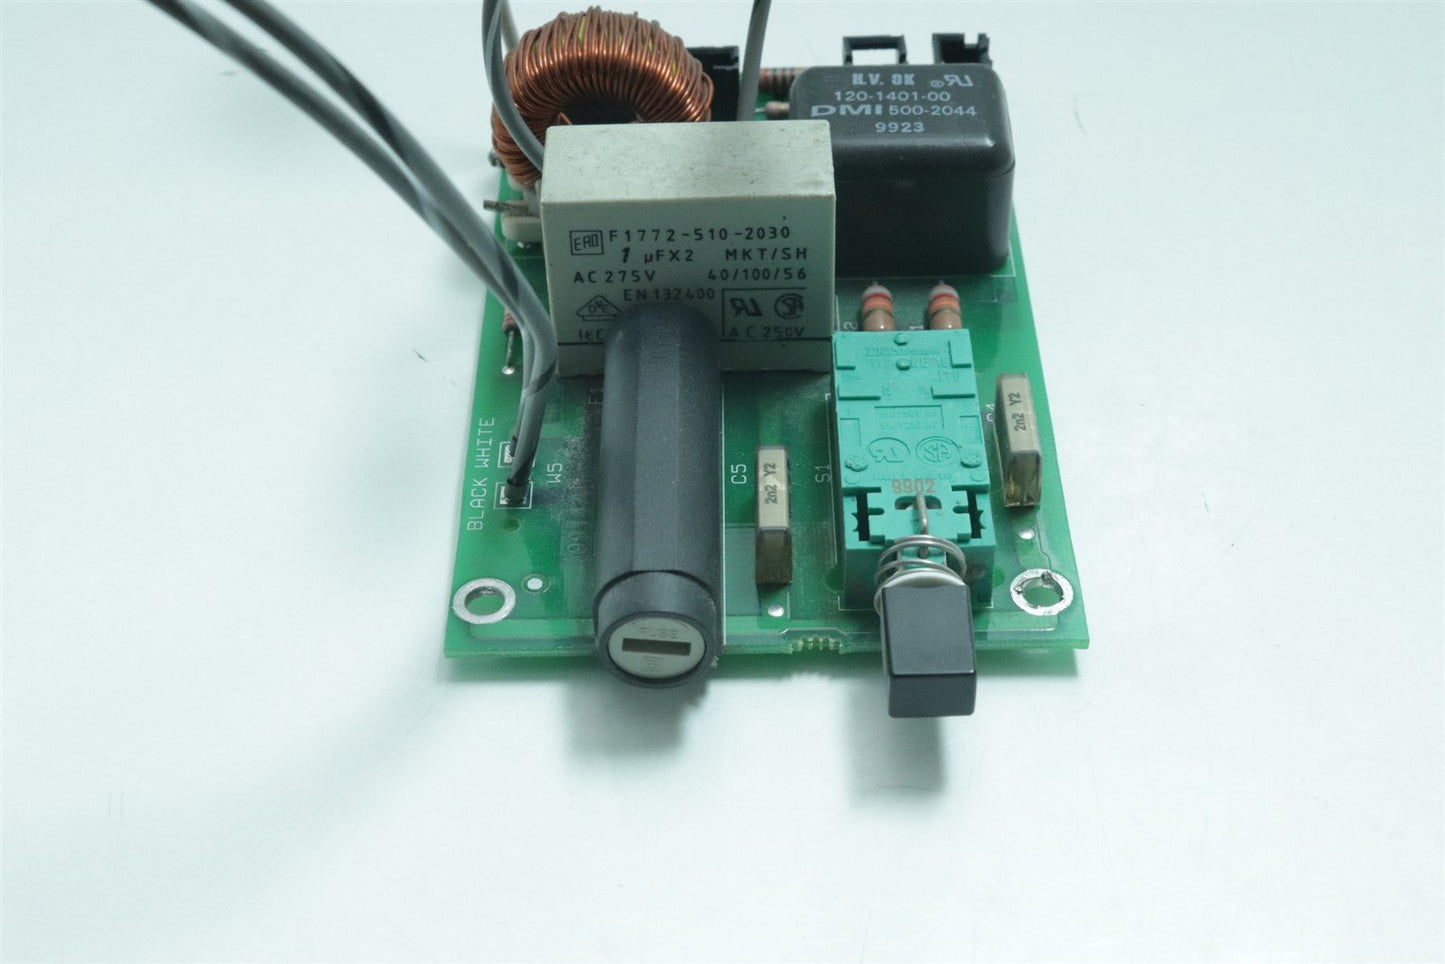 Tektronix TDS 430A Oscilloscope Q9B-0856-01 Main Switch Card w/ Fuse+Line Filter